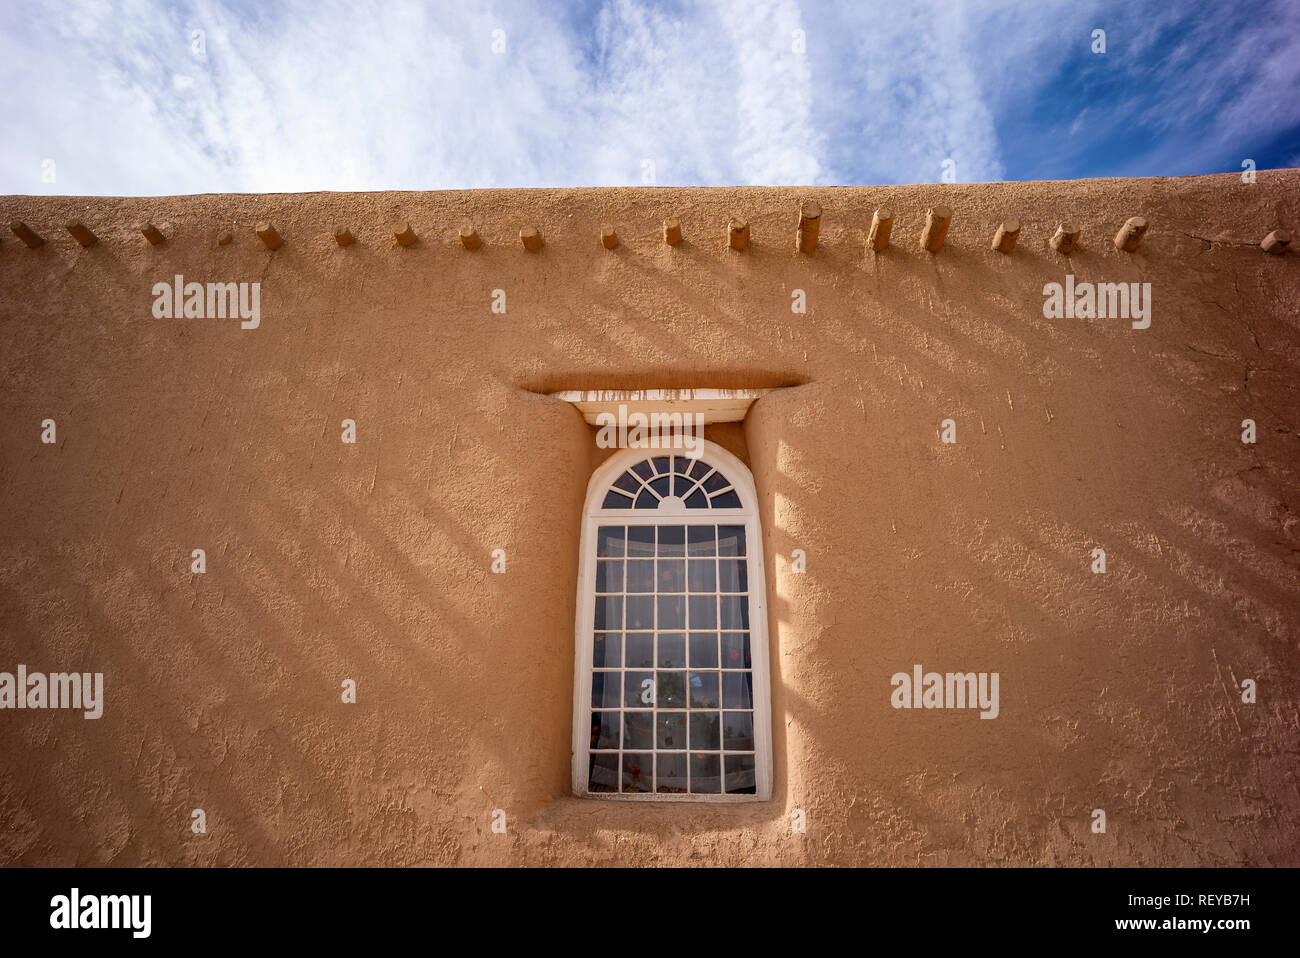 Shadows on a wall and window of San Francisco de Asis adobe church in Ranchos de Taos, New Mexico, USA Stock Photo